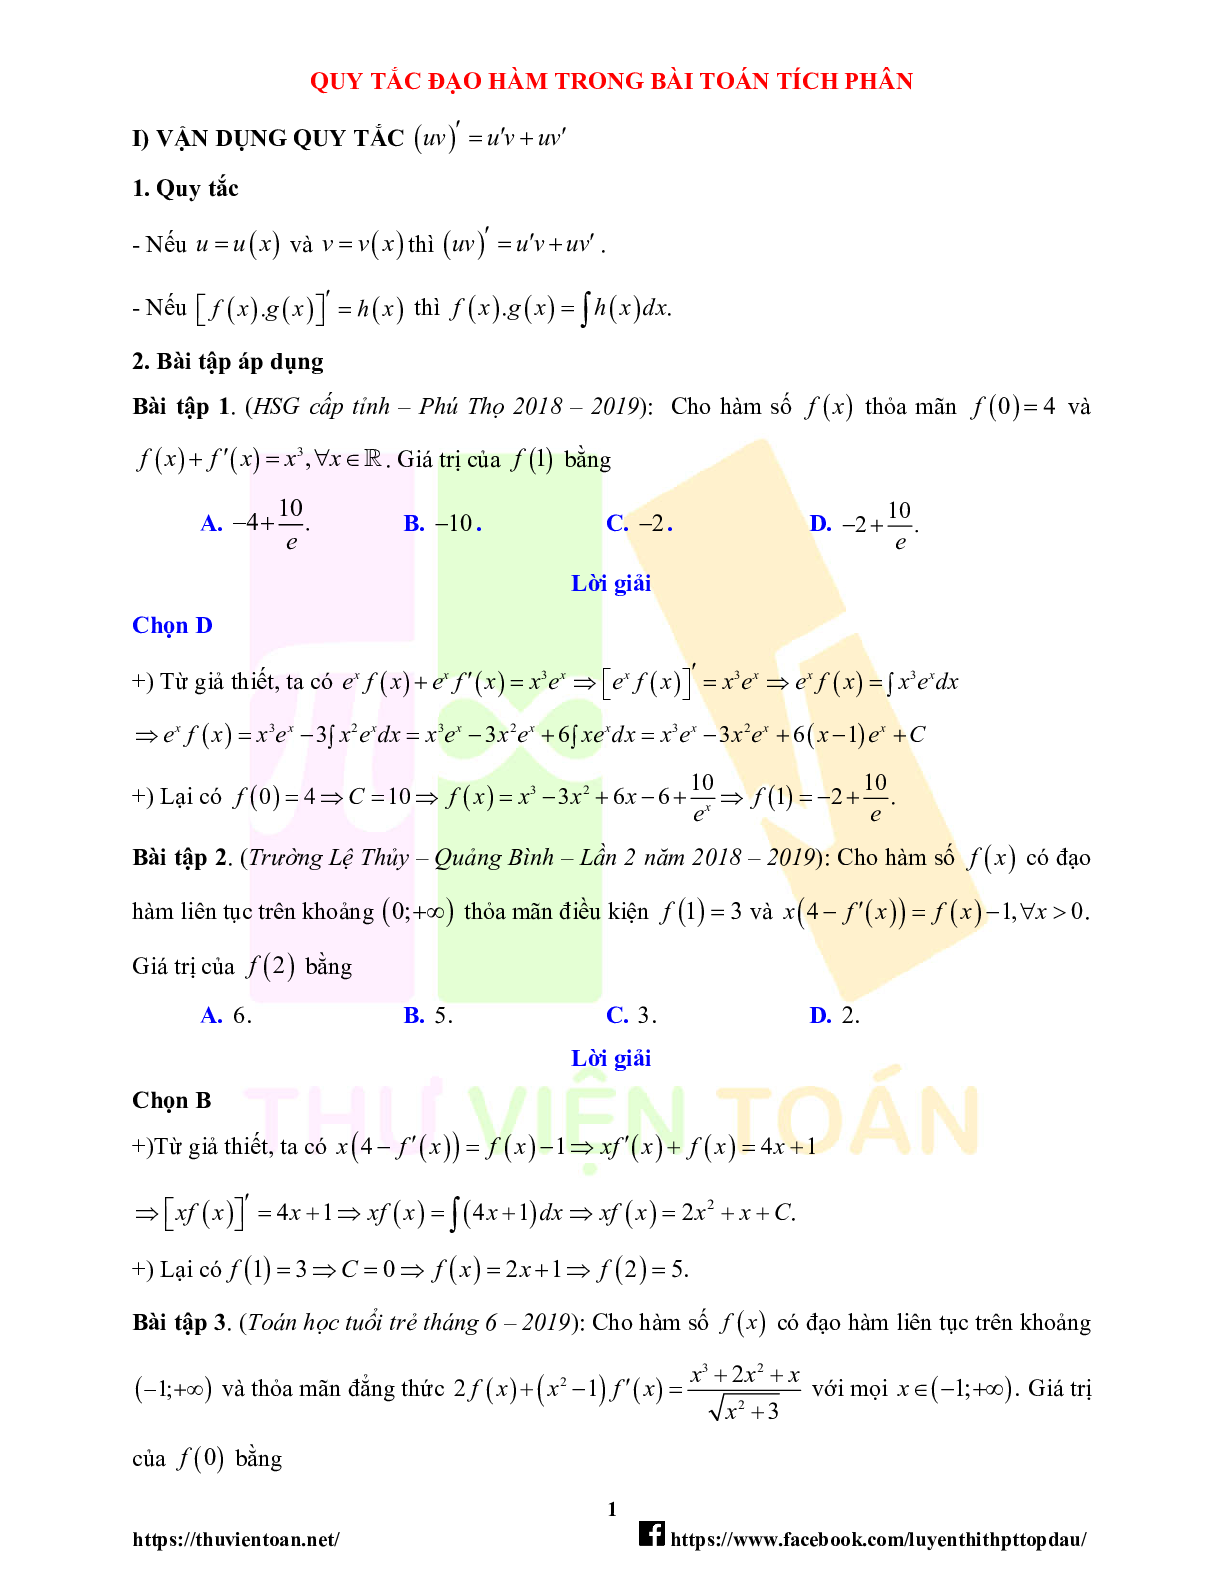 Lý thuyết và bài tập về quy tắc đạo hàm trong bài toán tích phân - có đáp án chi tiết (trang 1)